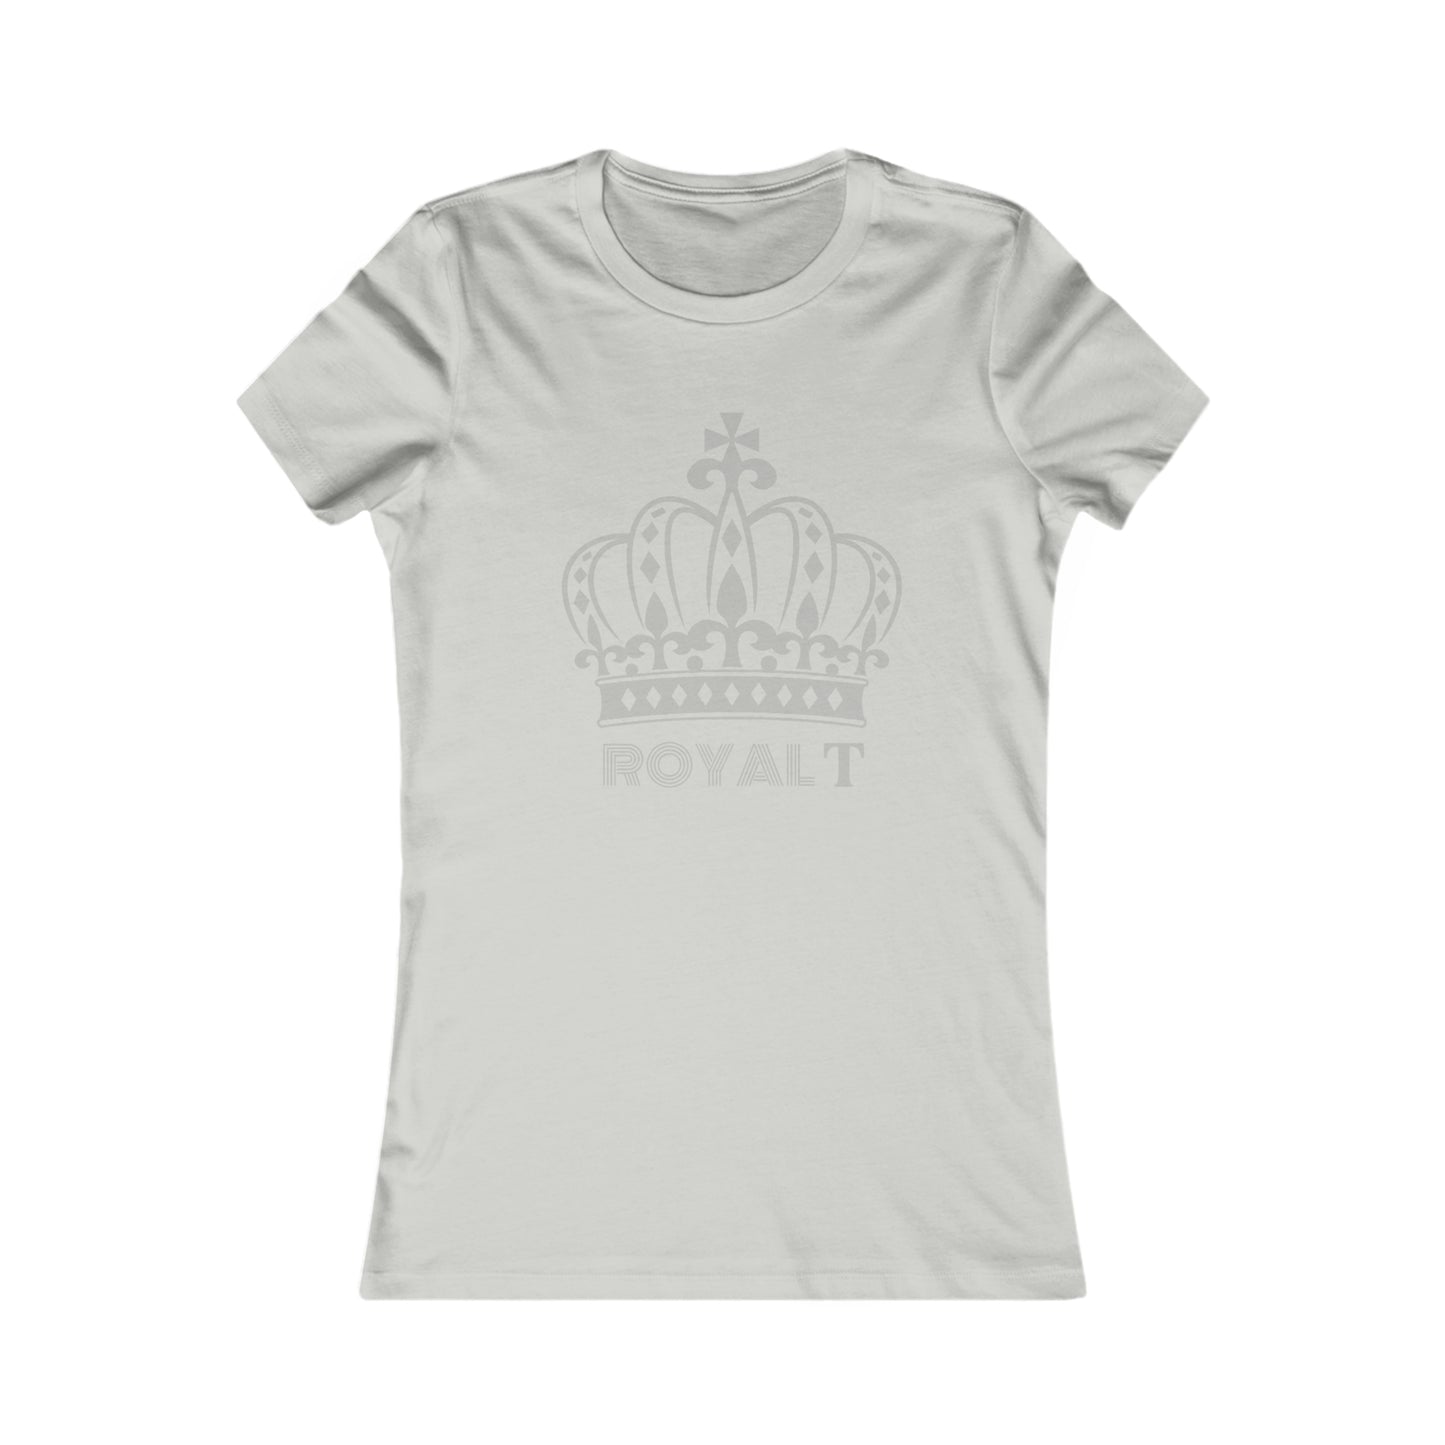 Silver Grey Women's Favorite T Shirt - Grey Royal T